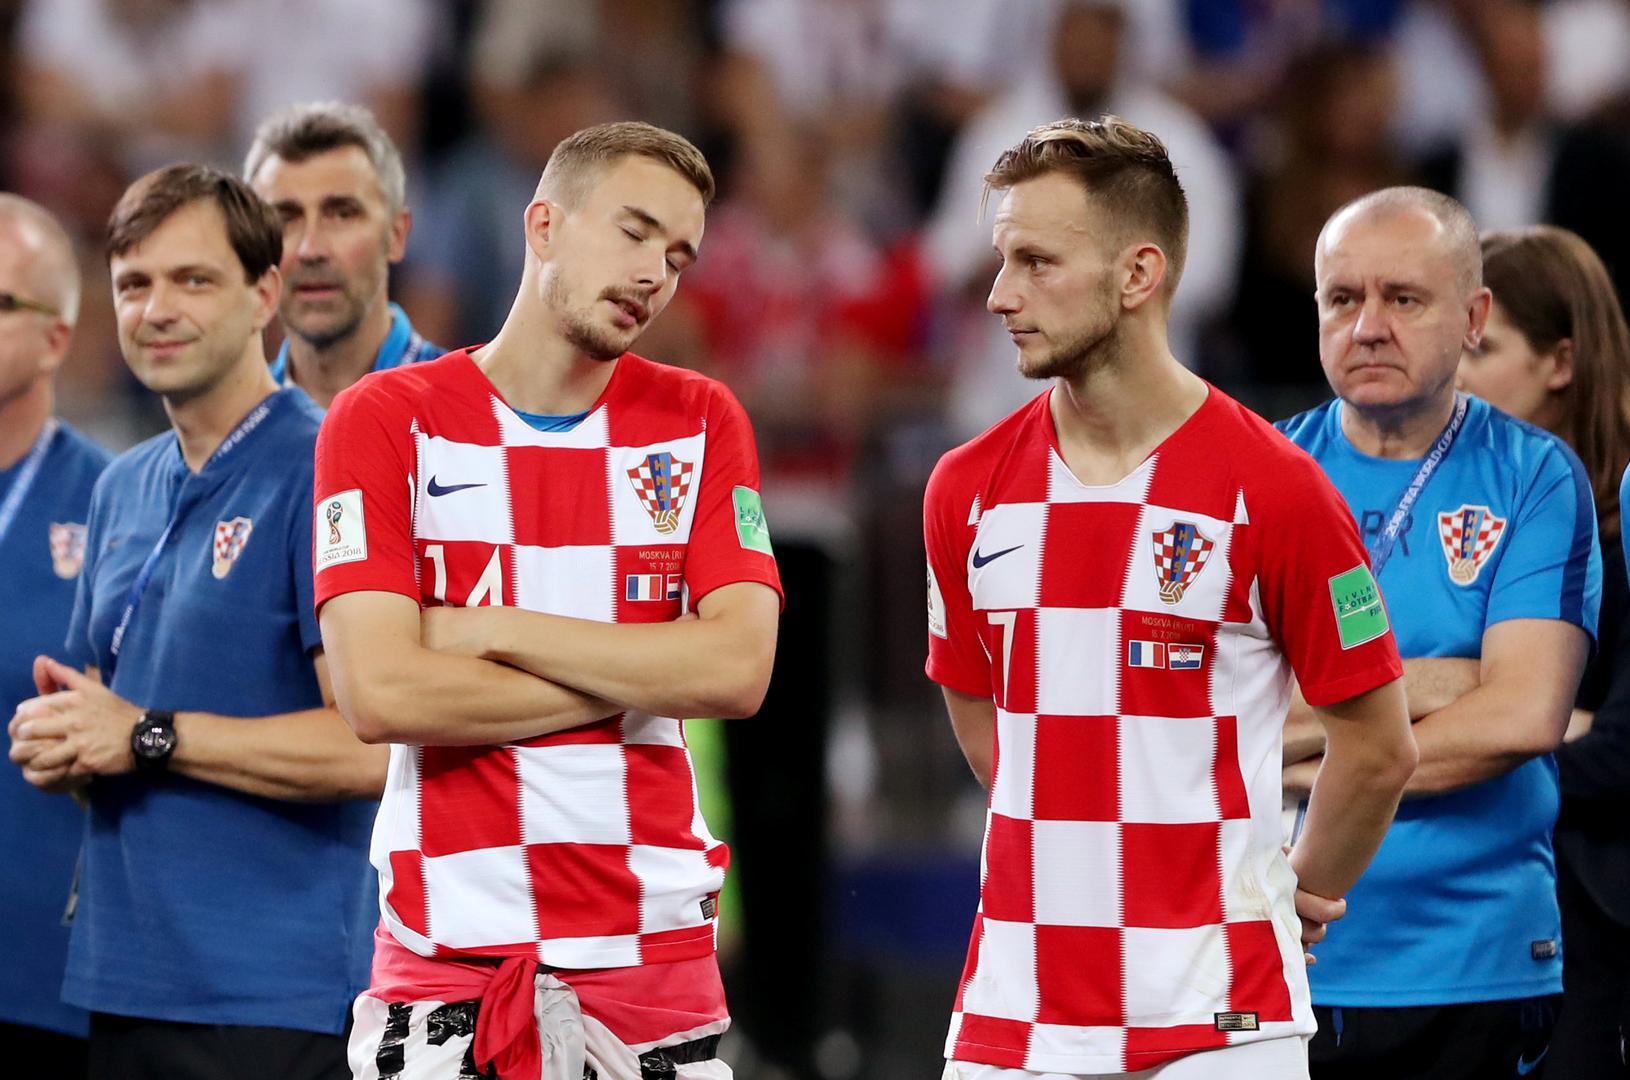 Hrvatski vratar zaplakao je nakon što su vatreni izgubili od Francuske i osvojili drugo mjesto
